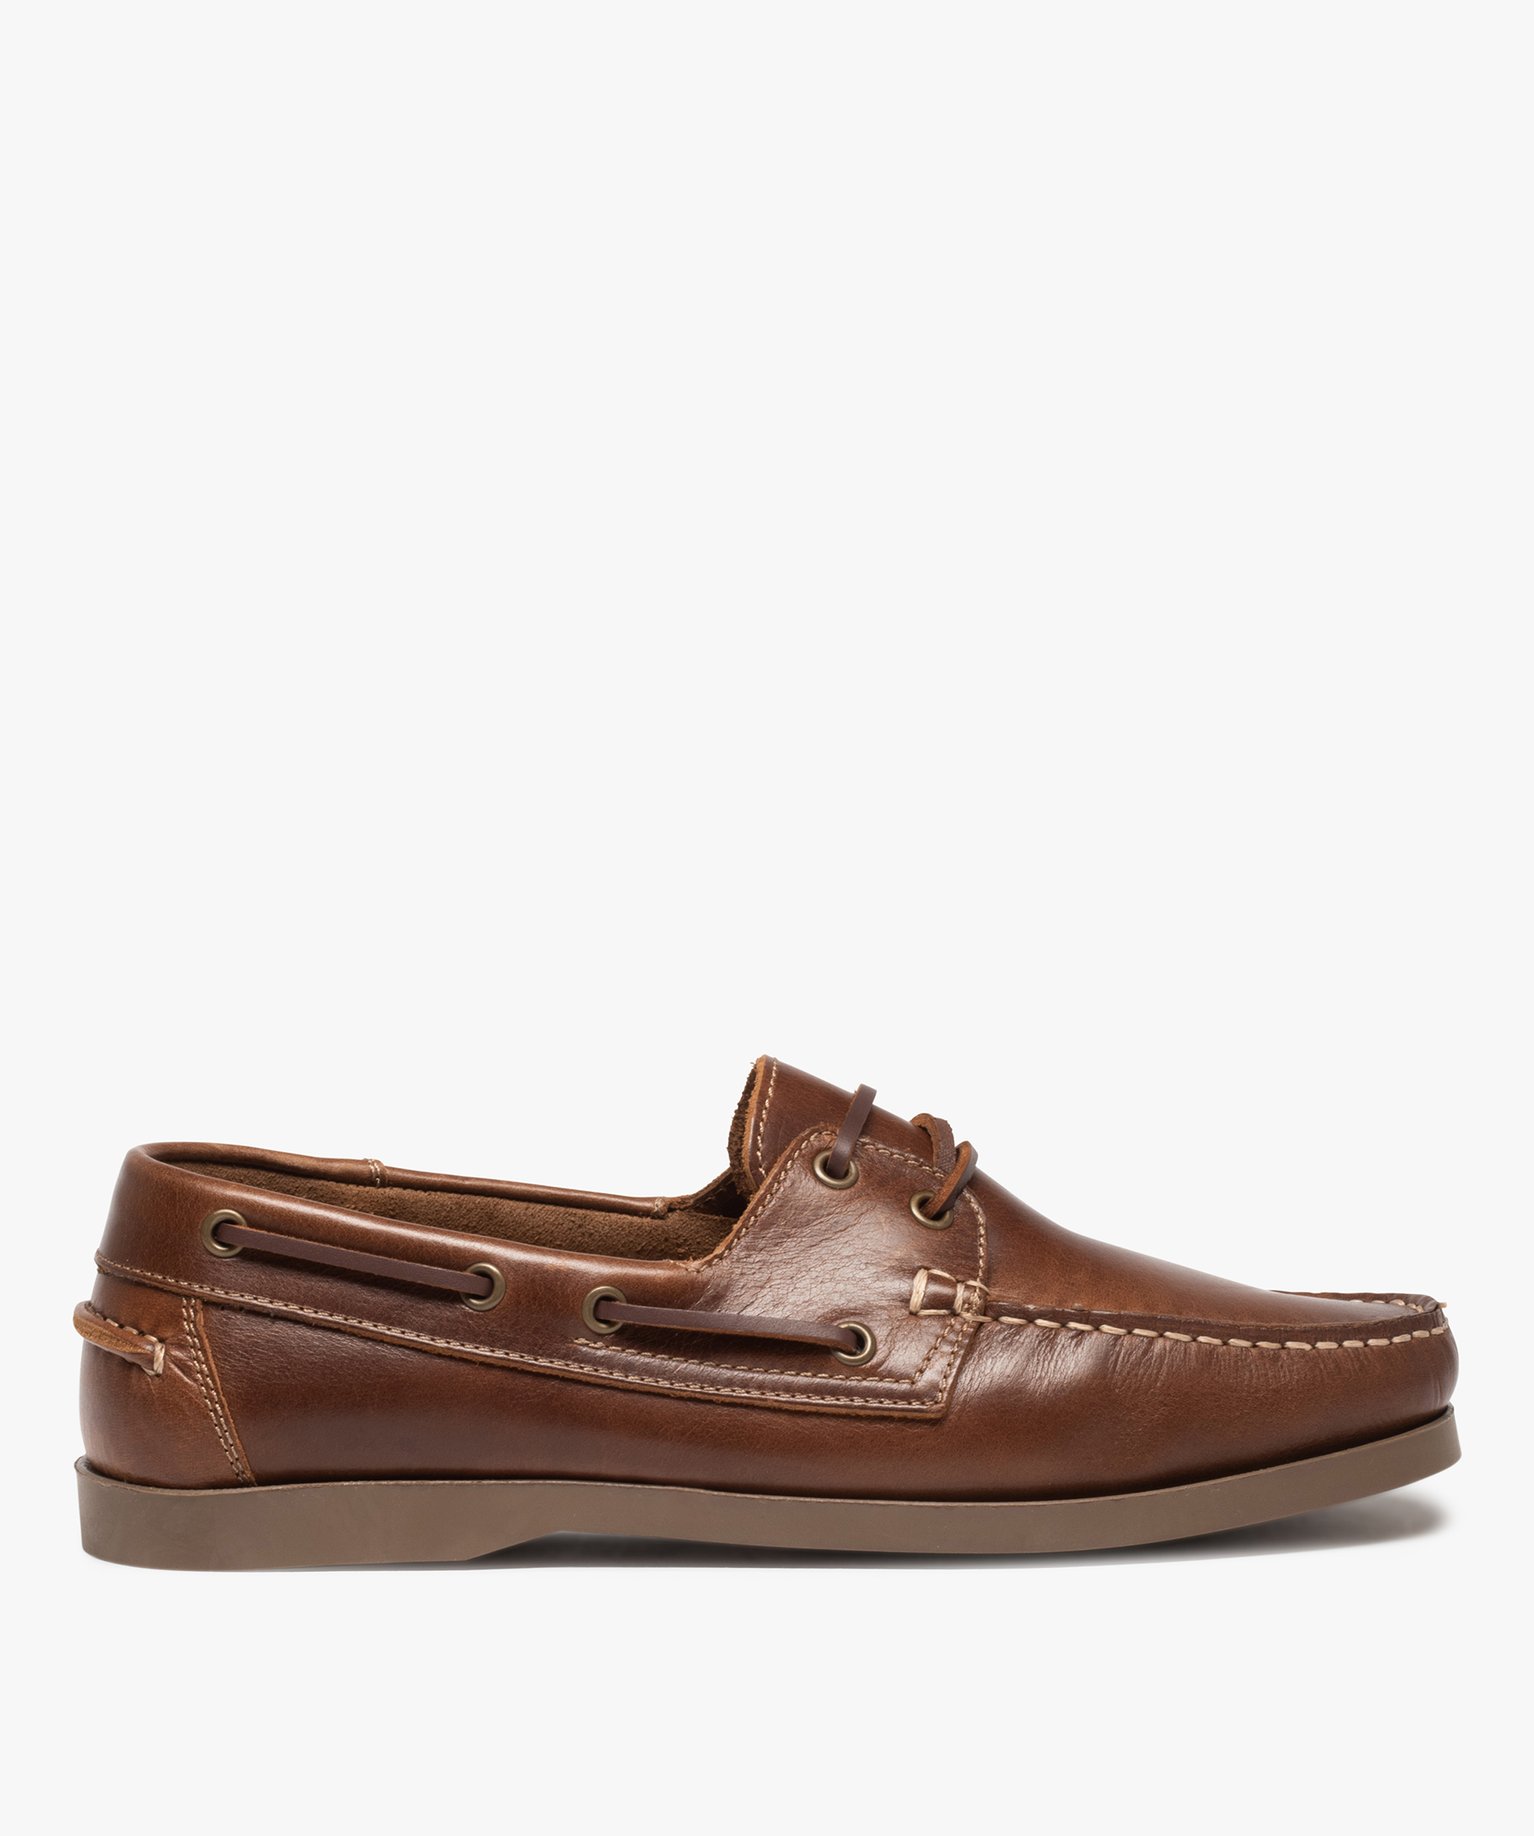 chaussures bateau homme classiques dessus cuir uni brun